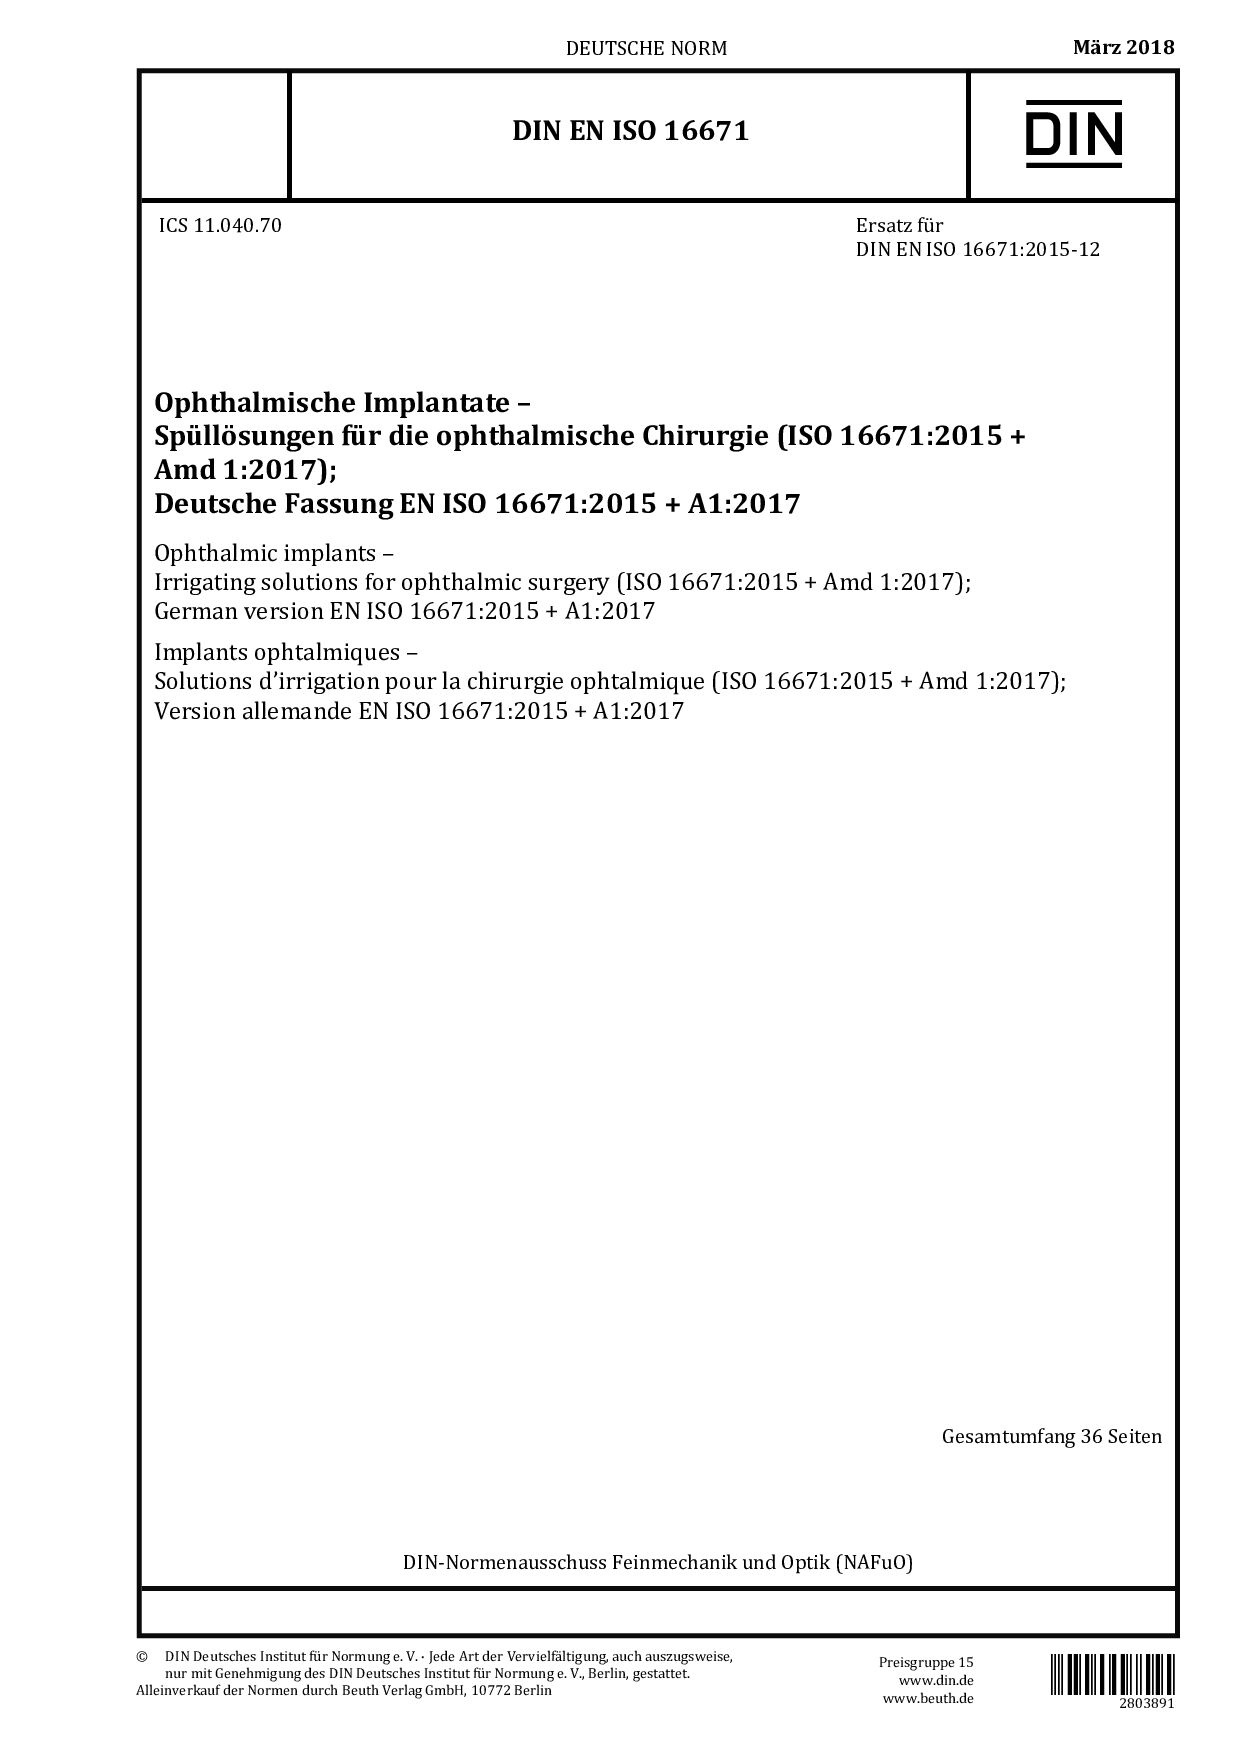 DIN EN ISO 16671:2018封面图